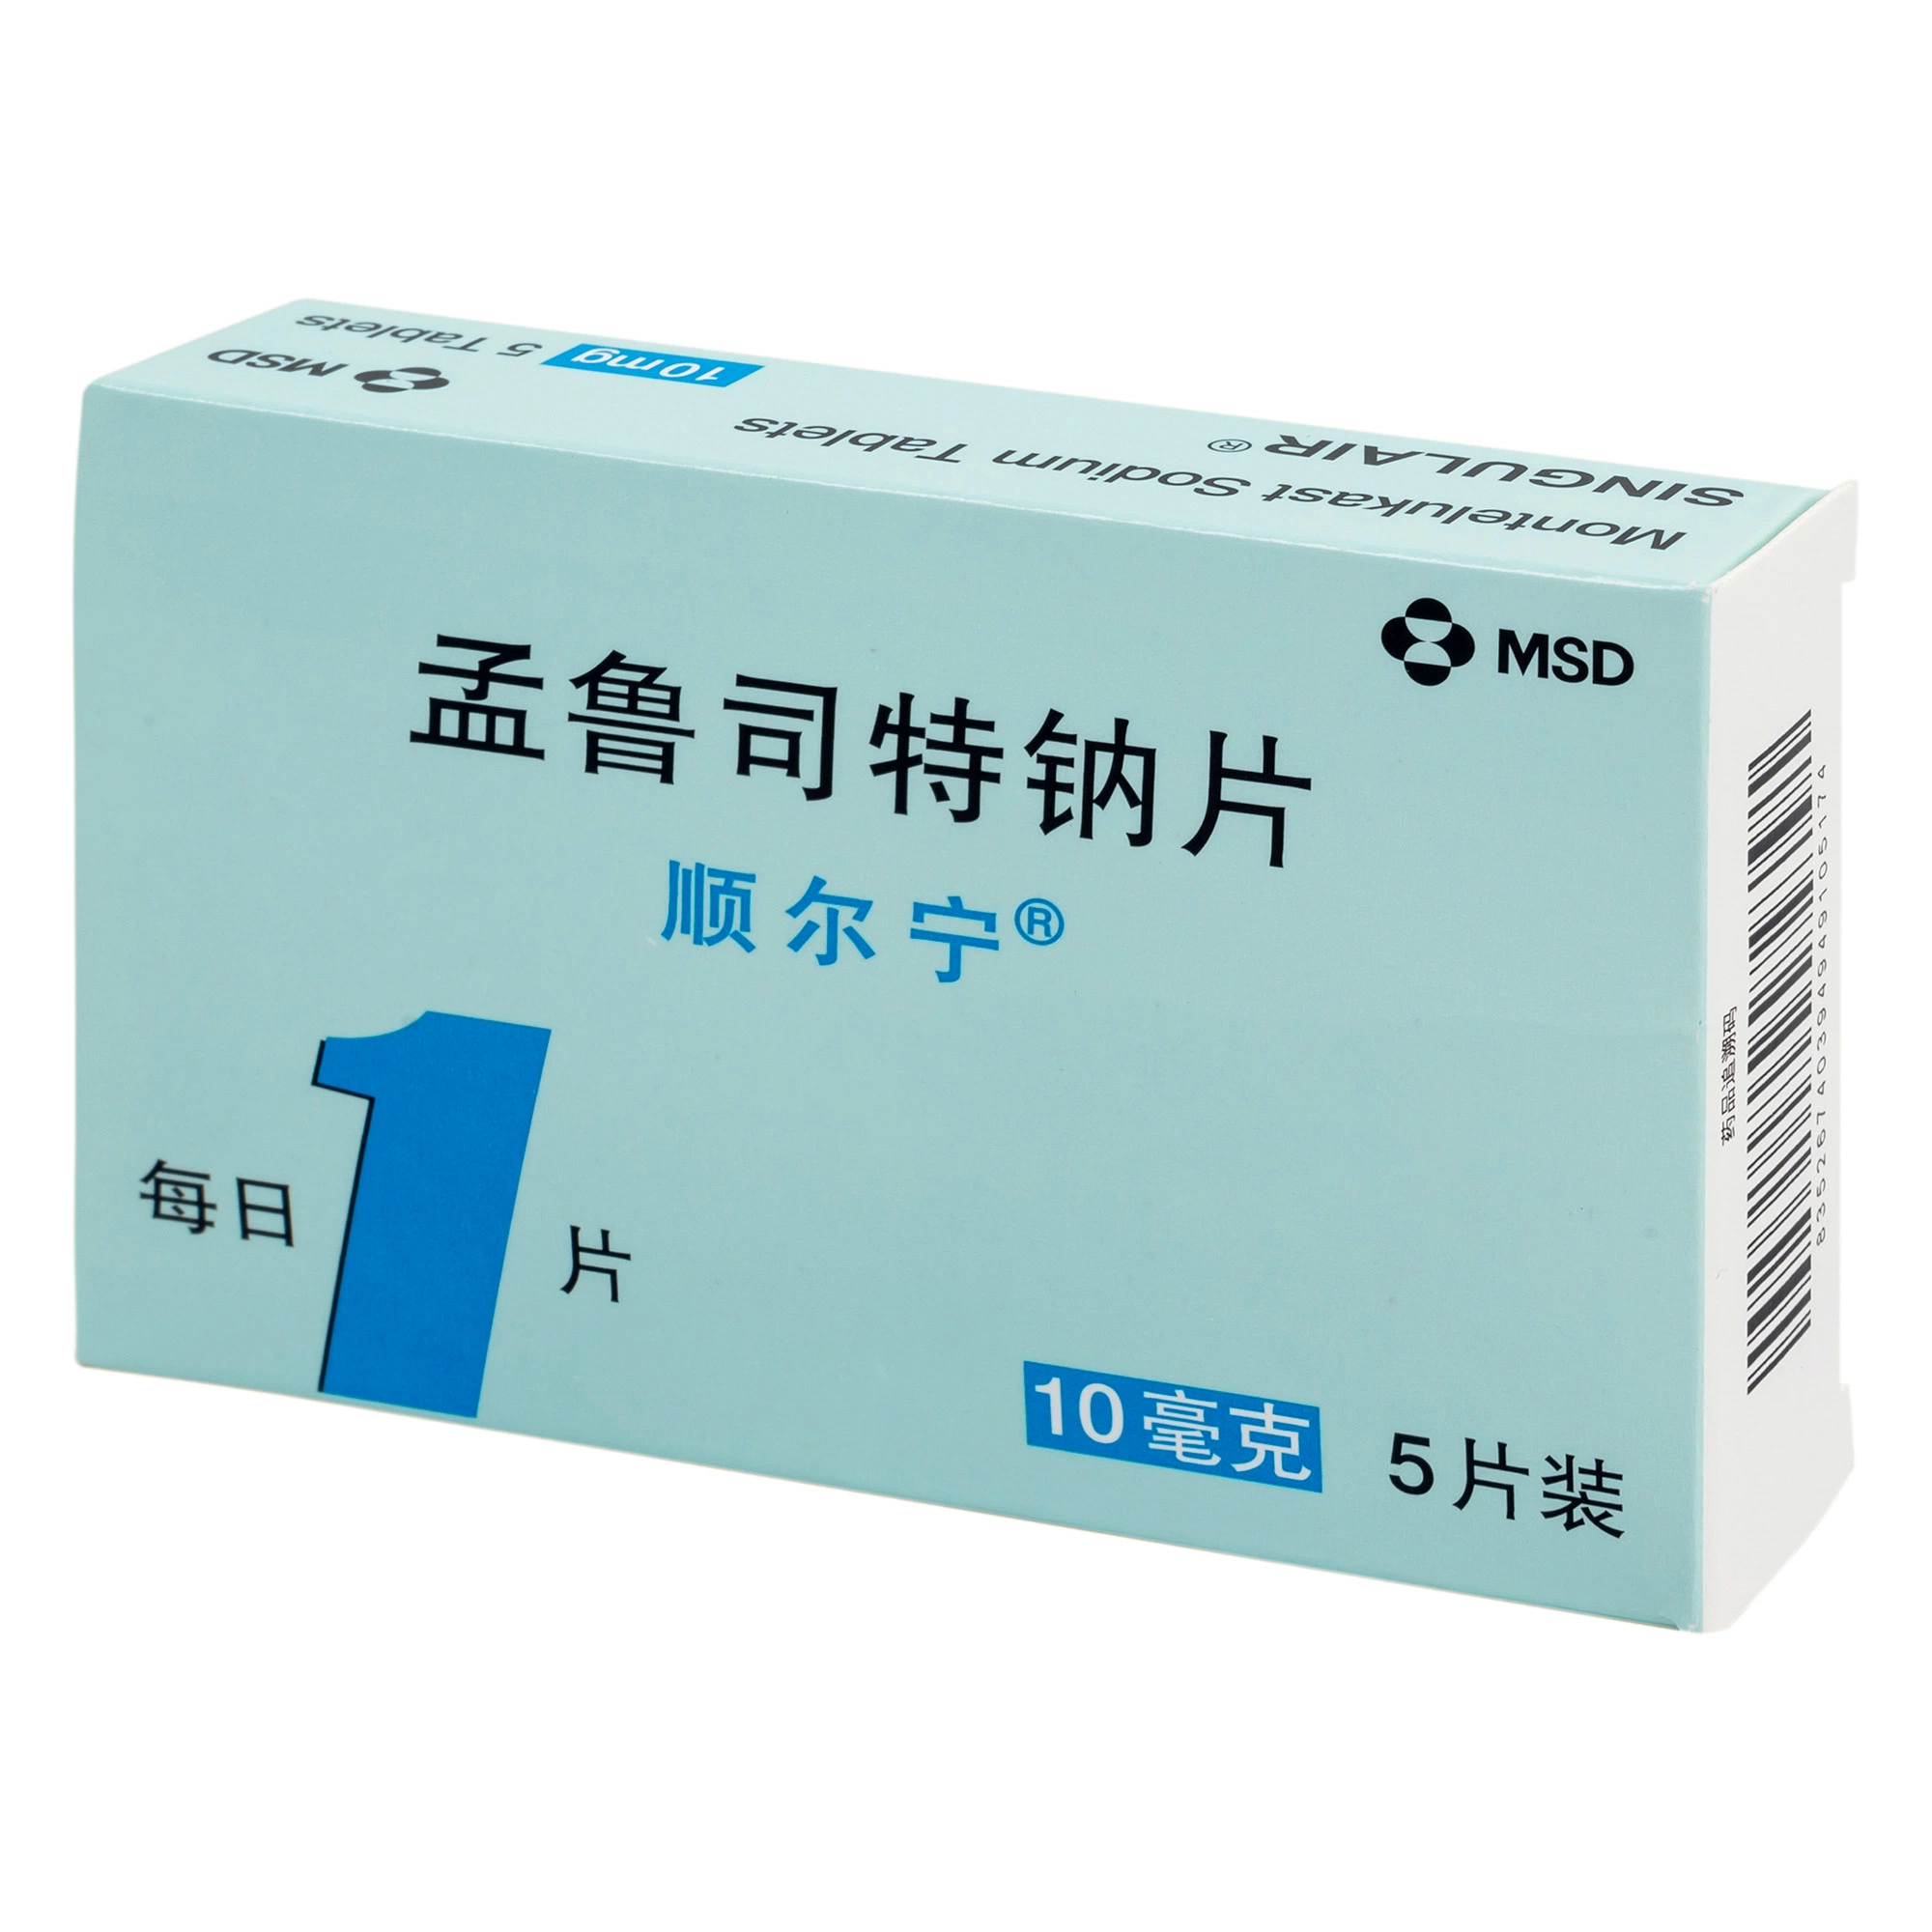 Montelukast Sodium Tablets para la prevención y tratamiento a largo plazo del asma en los adultos